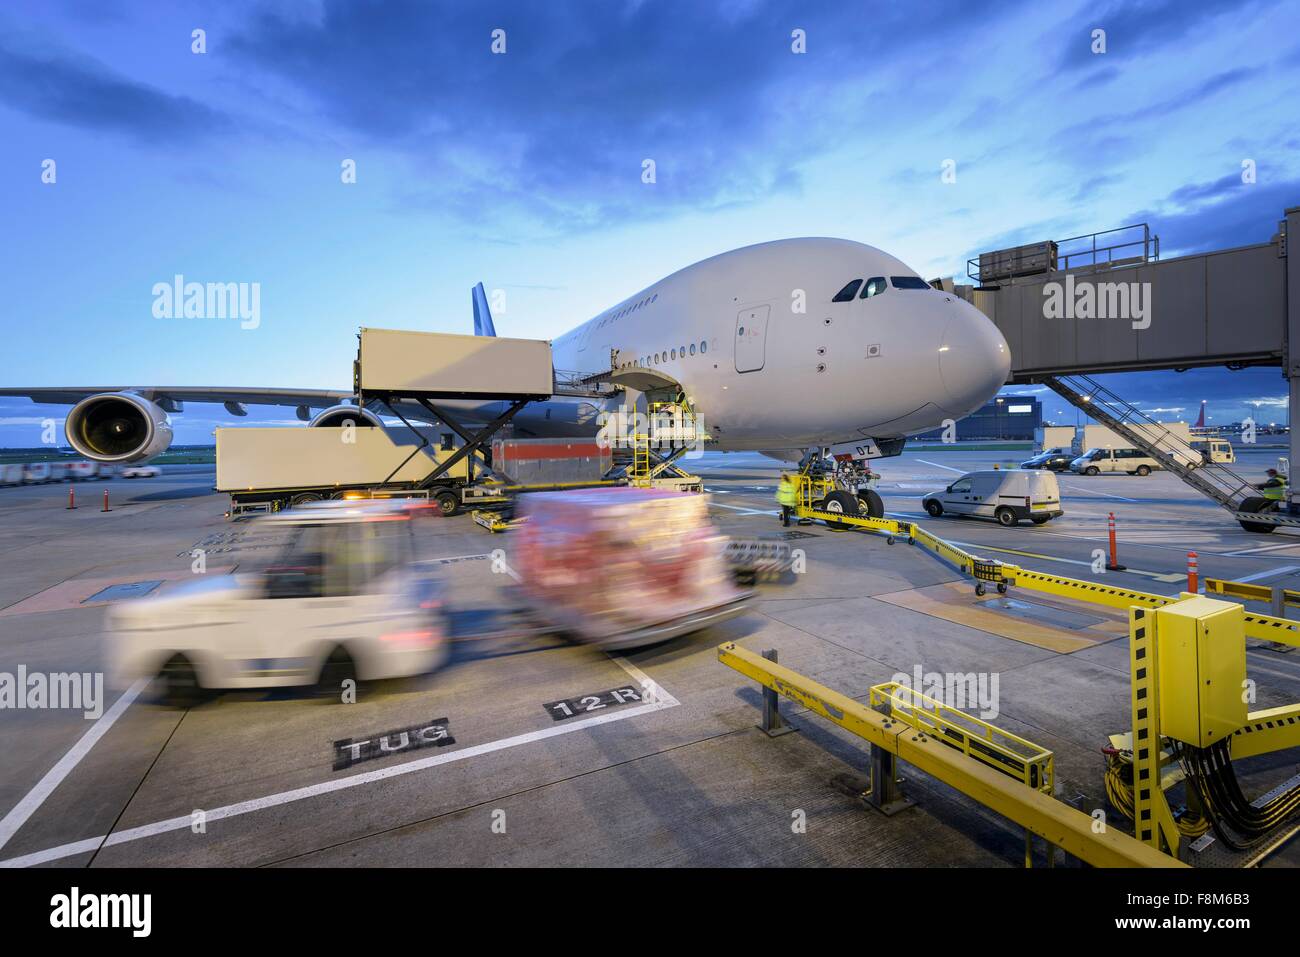 Dämmerung über A380-Flugzeuge auf Stand am Flughafen mit Bodenfahrzeugen in Bewegung Stockfoto